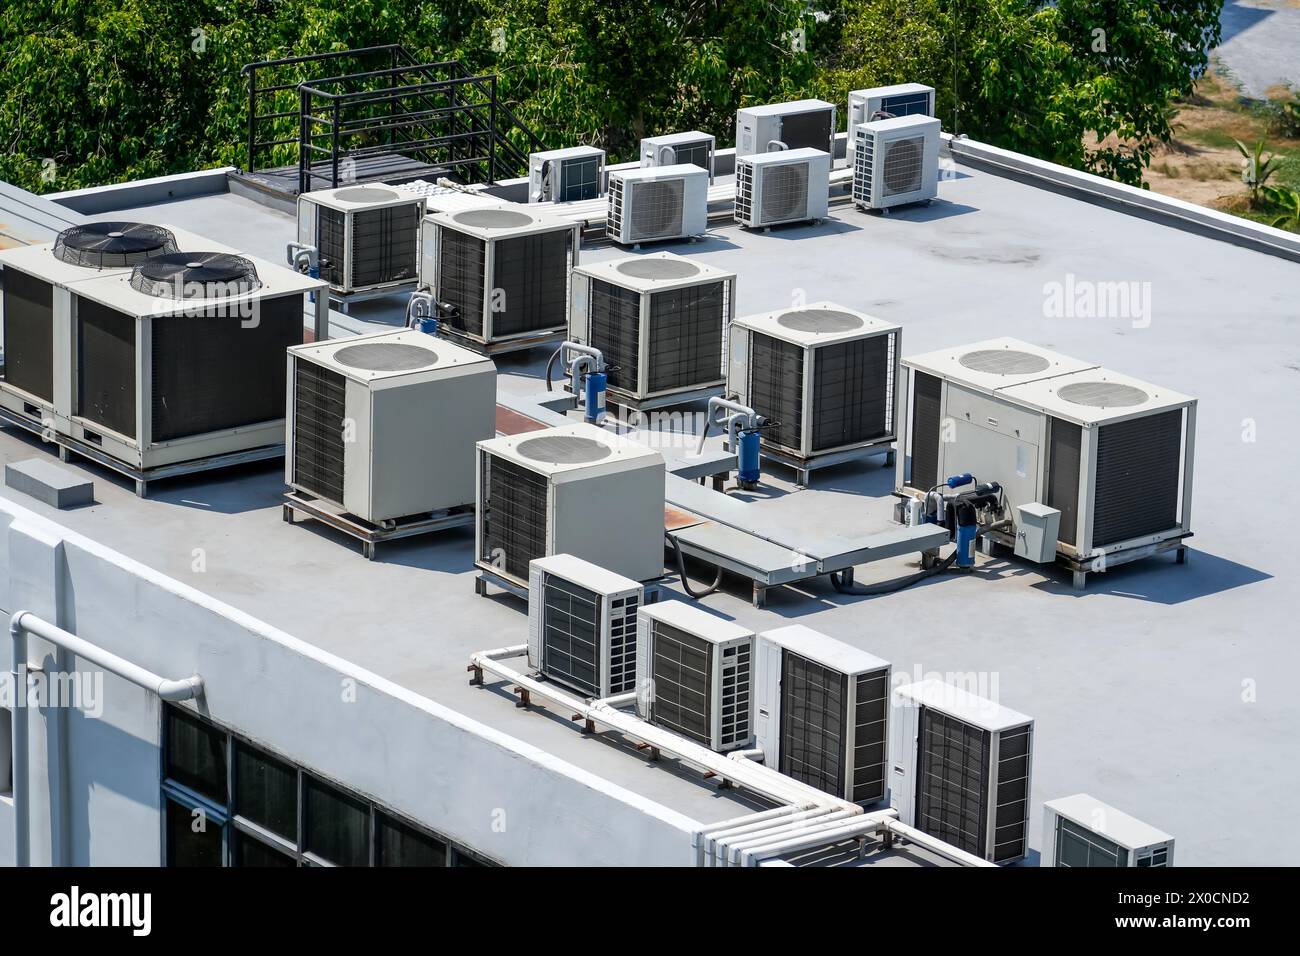 Les unités externes des systèmes commerciaux de climatisation et de ventilation sont installées sur le toit d'un bâtiment industriel Banque D'Images